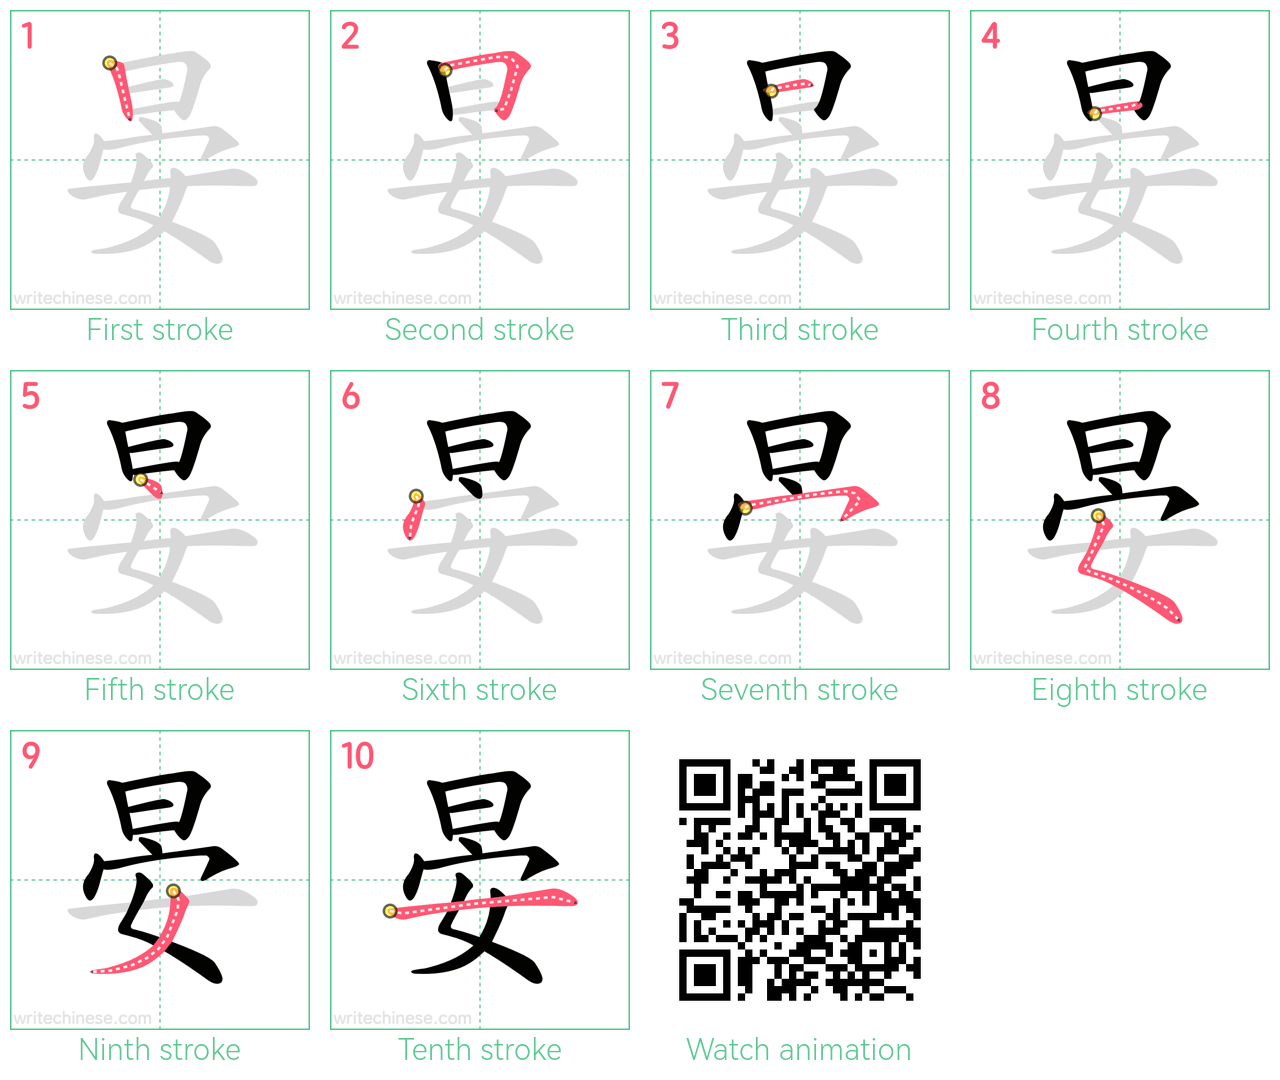 晏 step-by-step stroke order diagrams